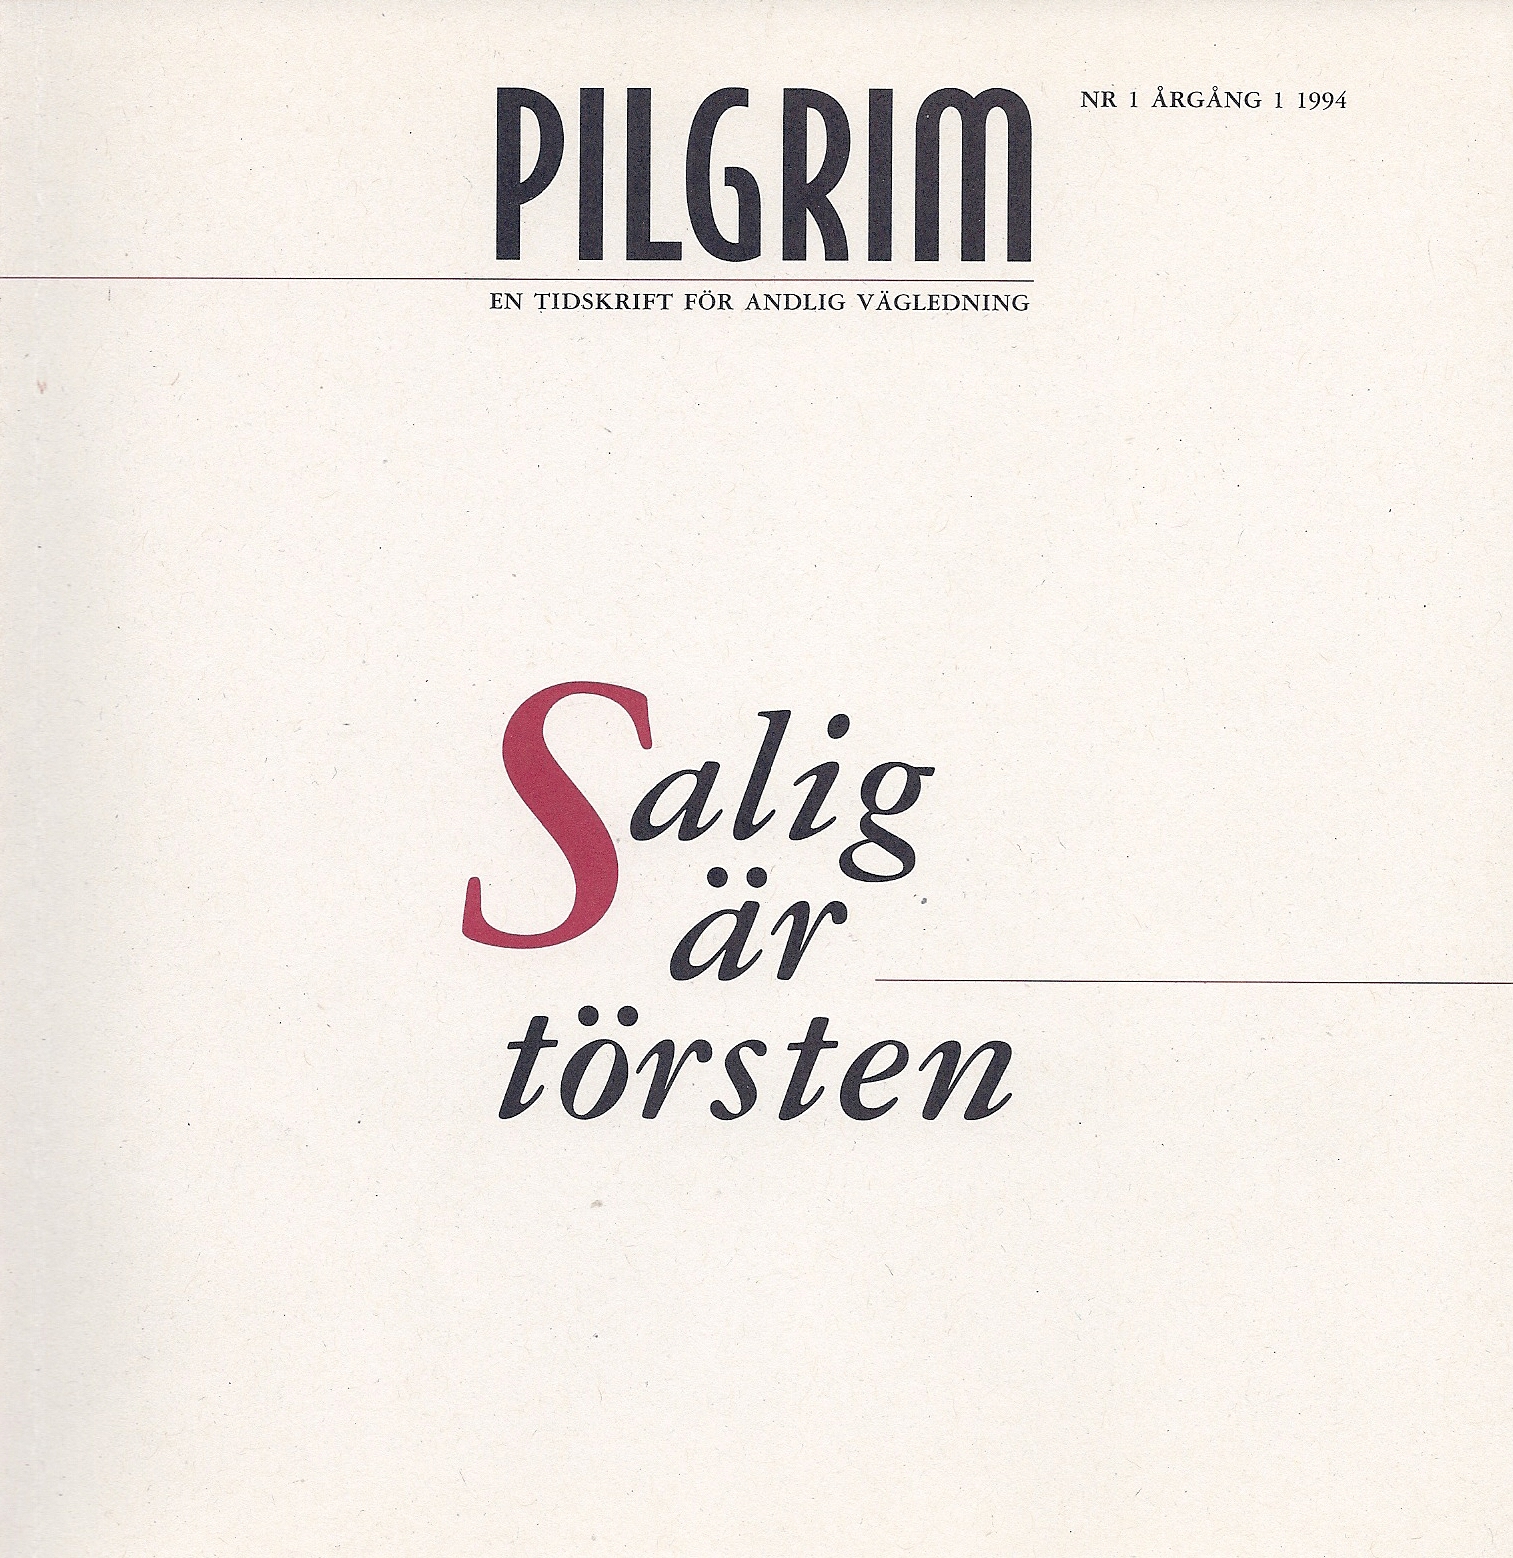 Den första utgåvan av Tidskriften Pilgrim, "Salig är törsten", utkom 1994.